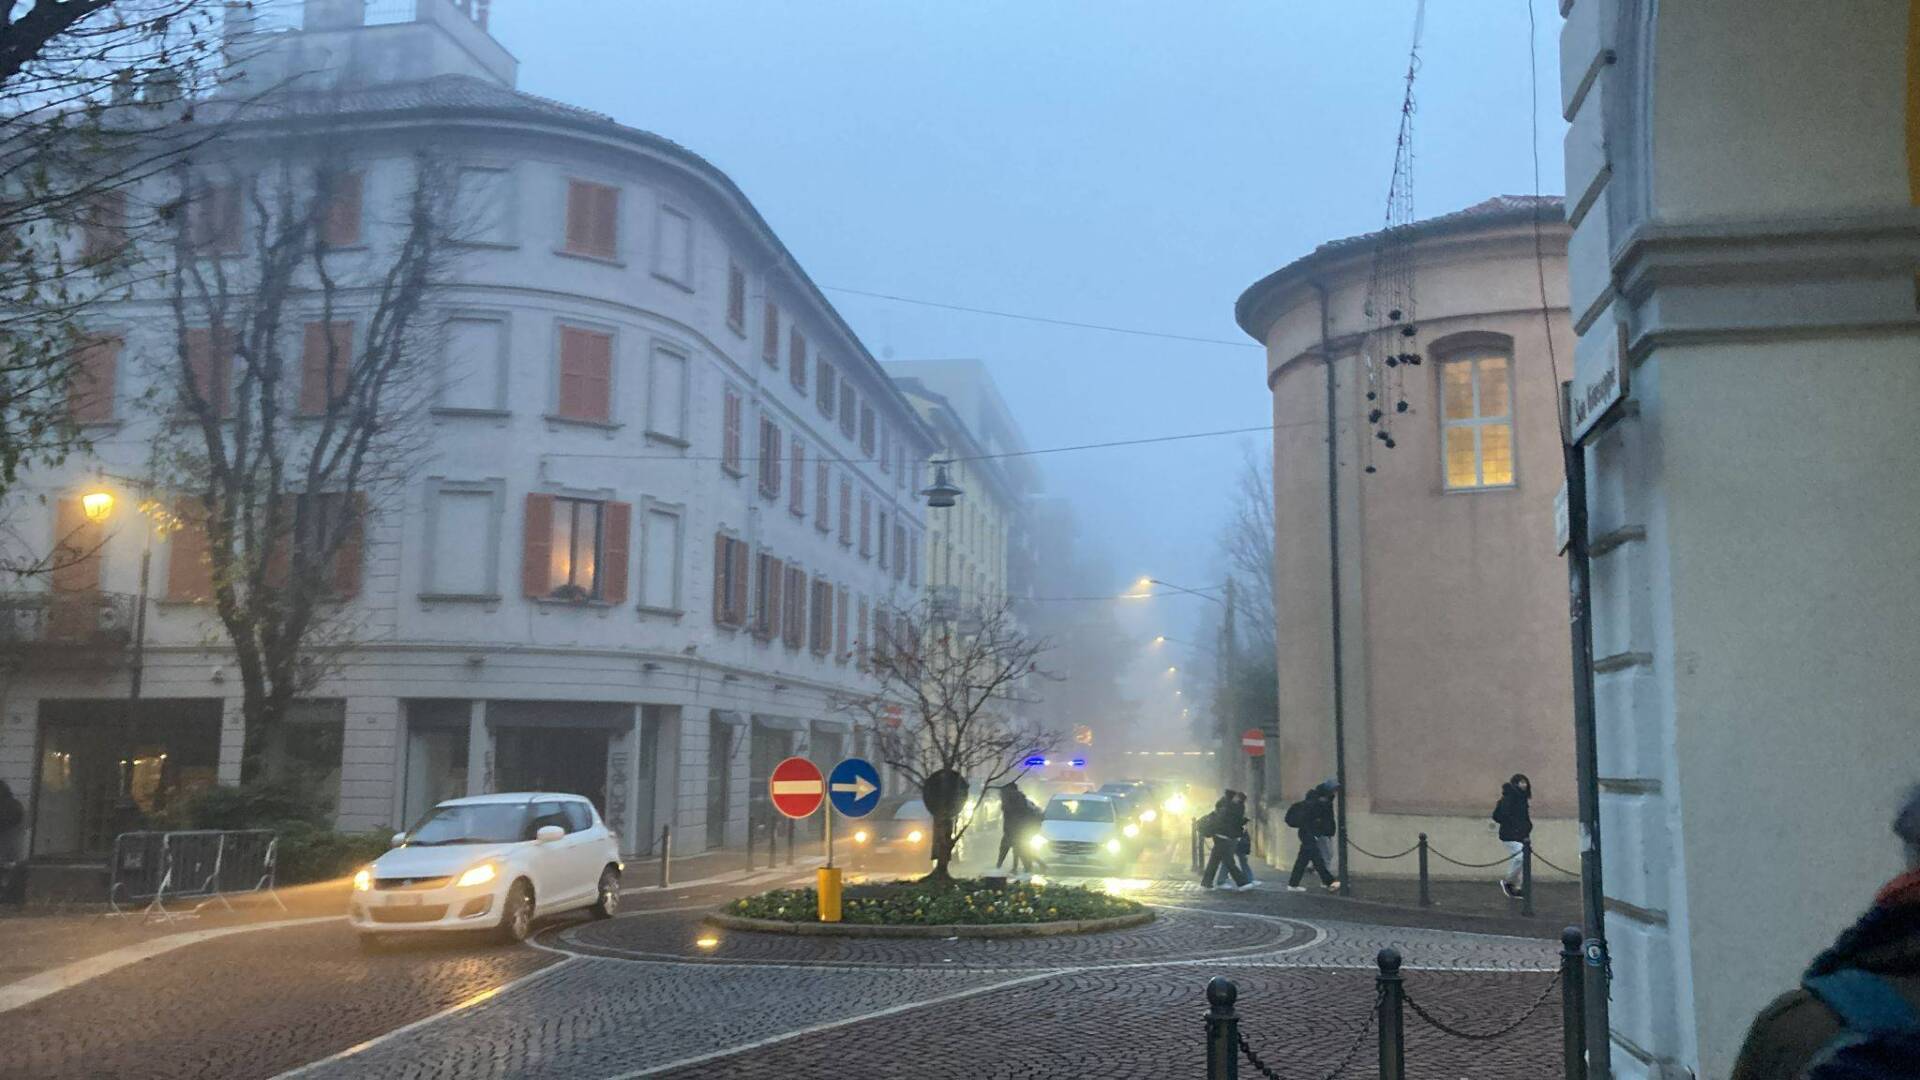 Nebbia Solaro Saronno-Monza